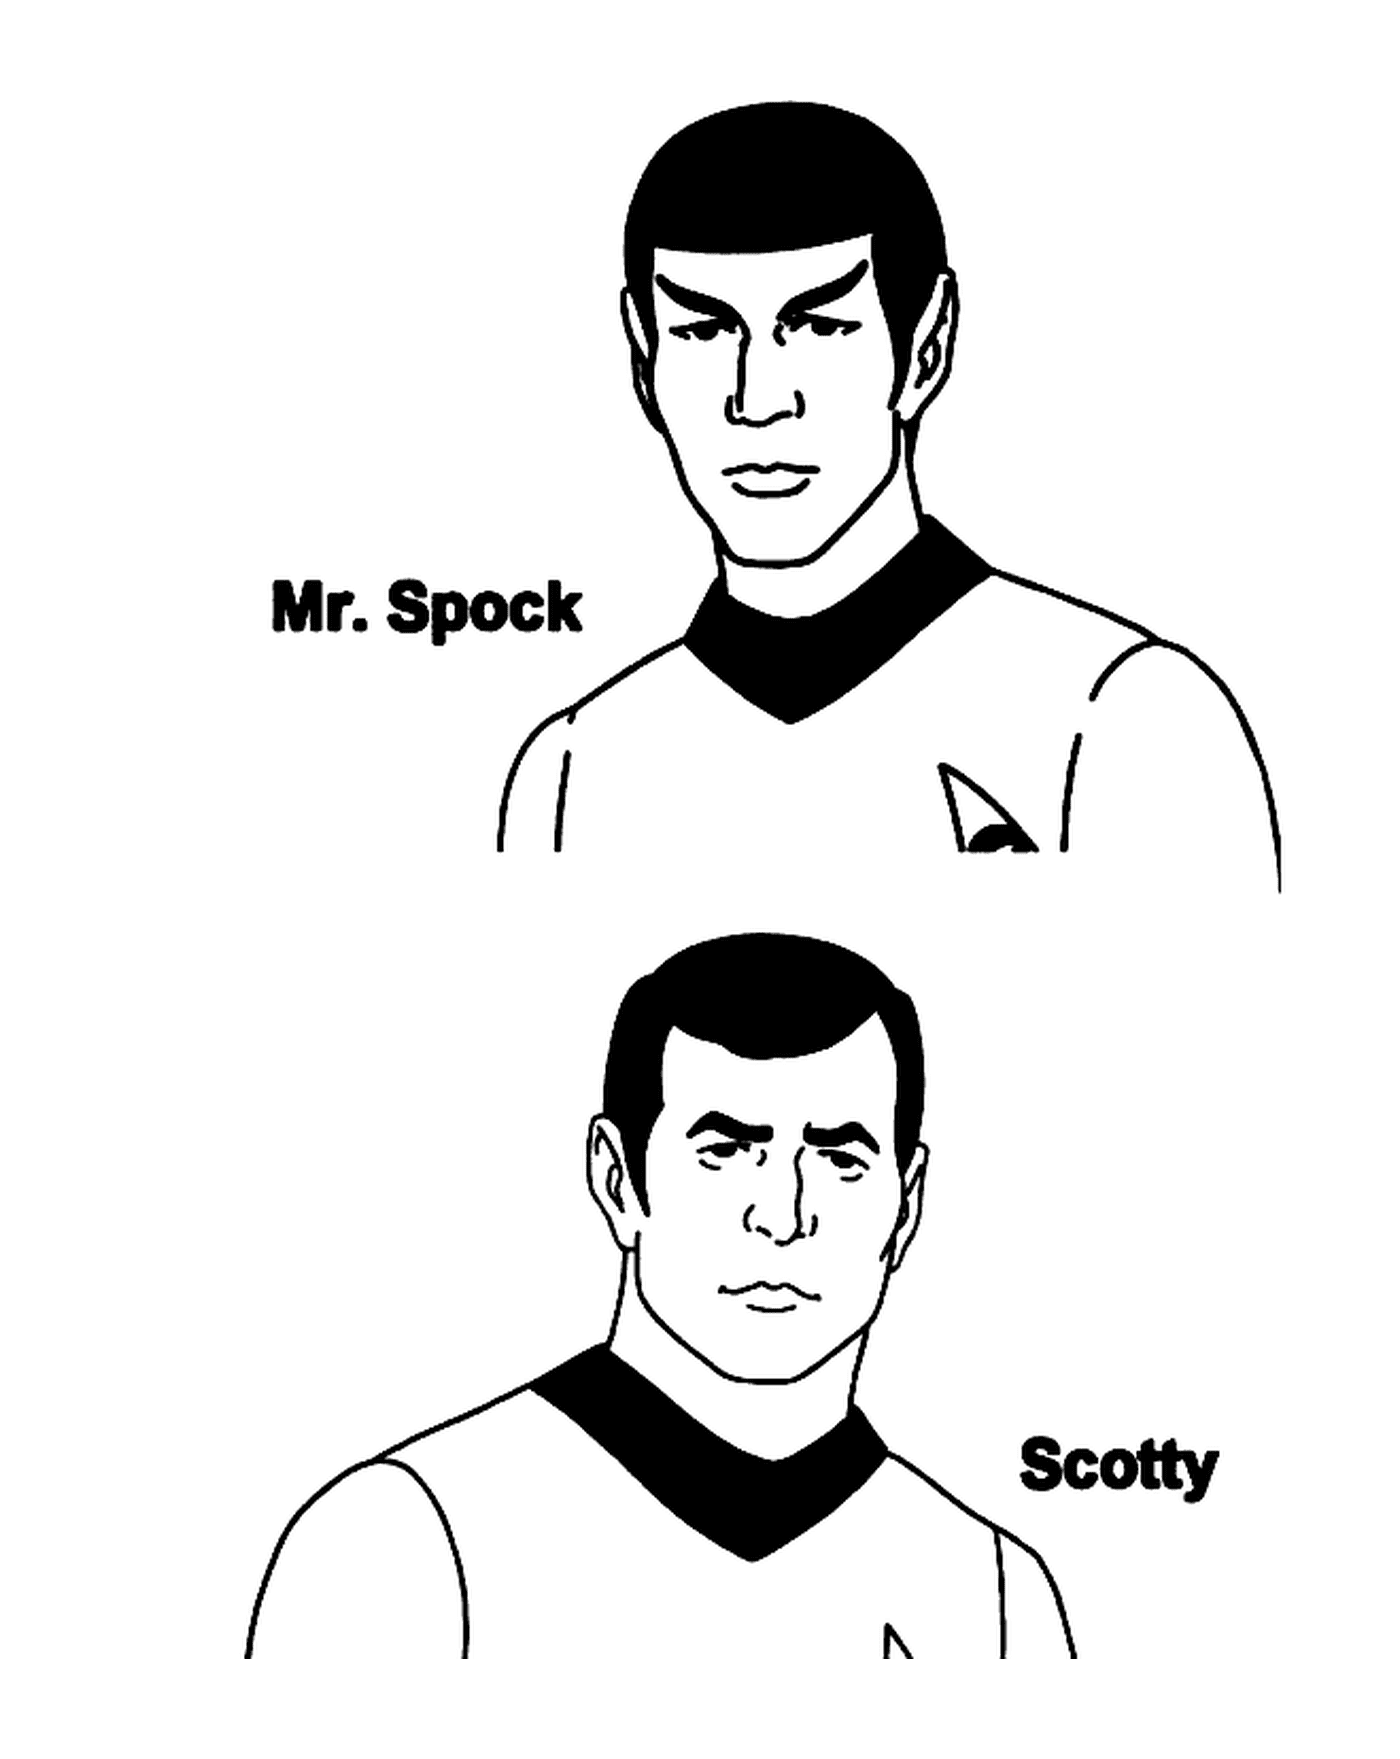   Monsieur Spock et Scotty de Star Trek 